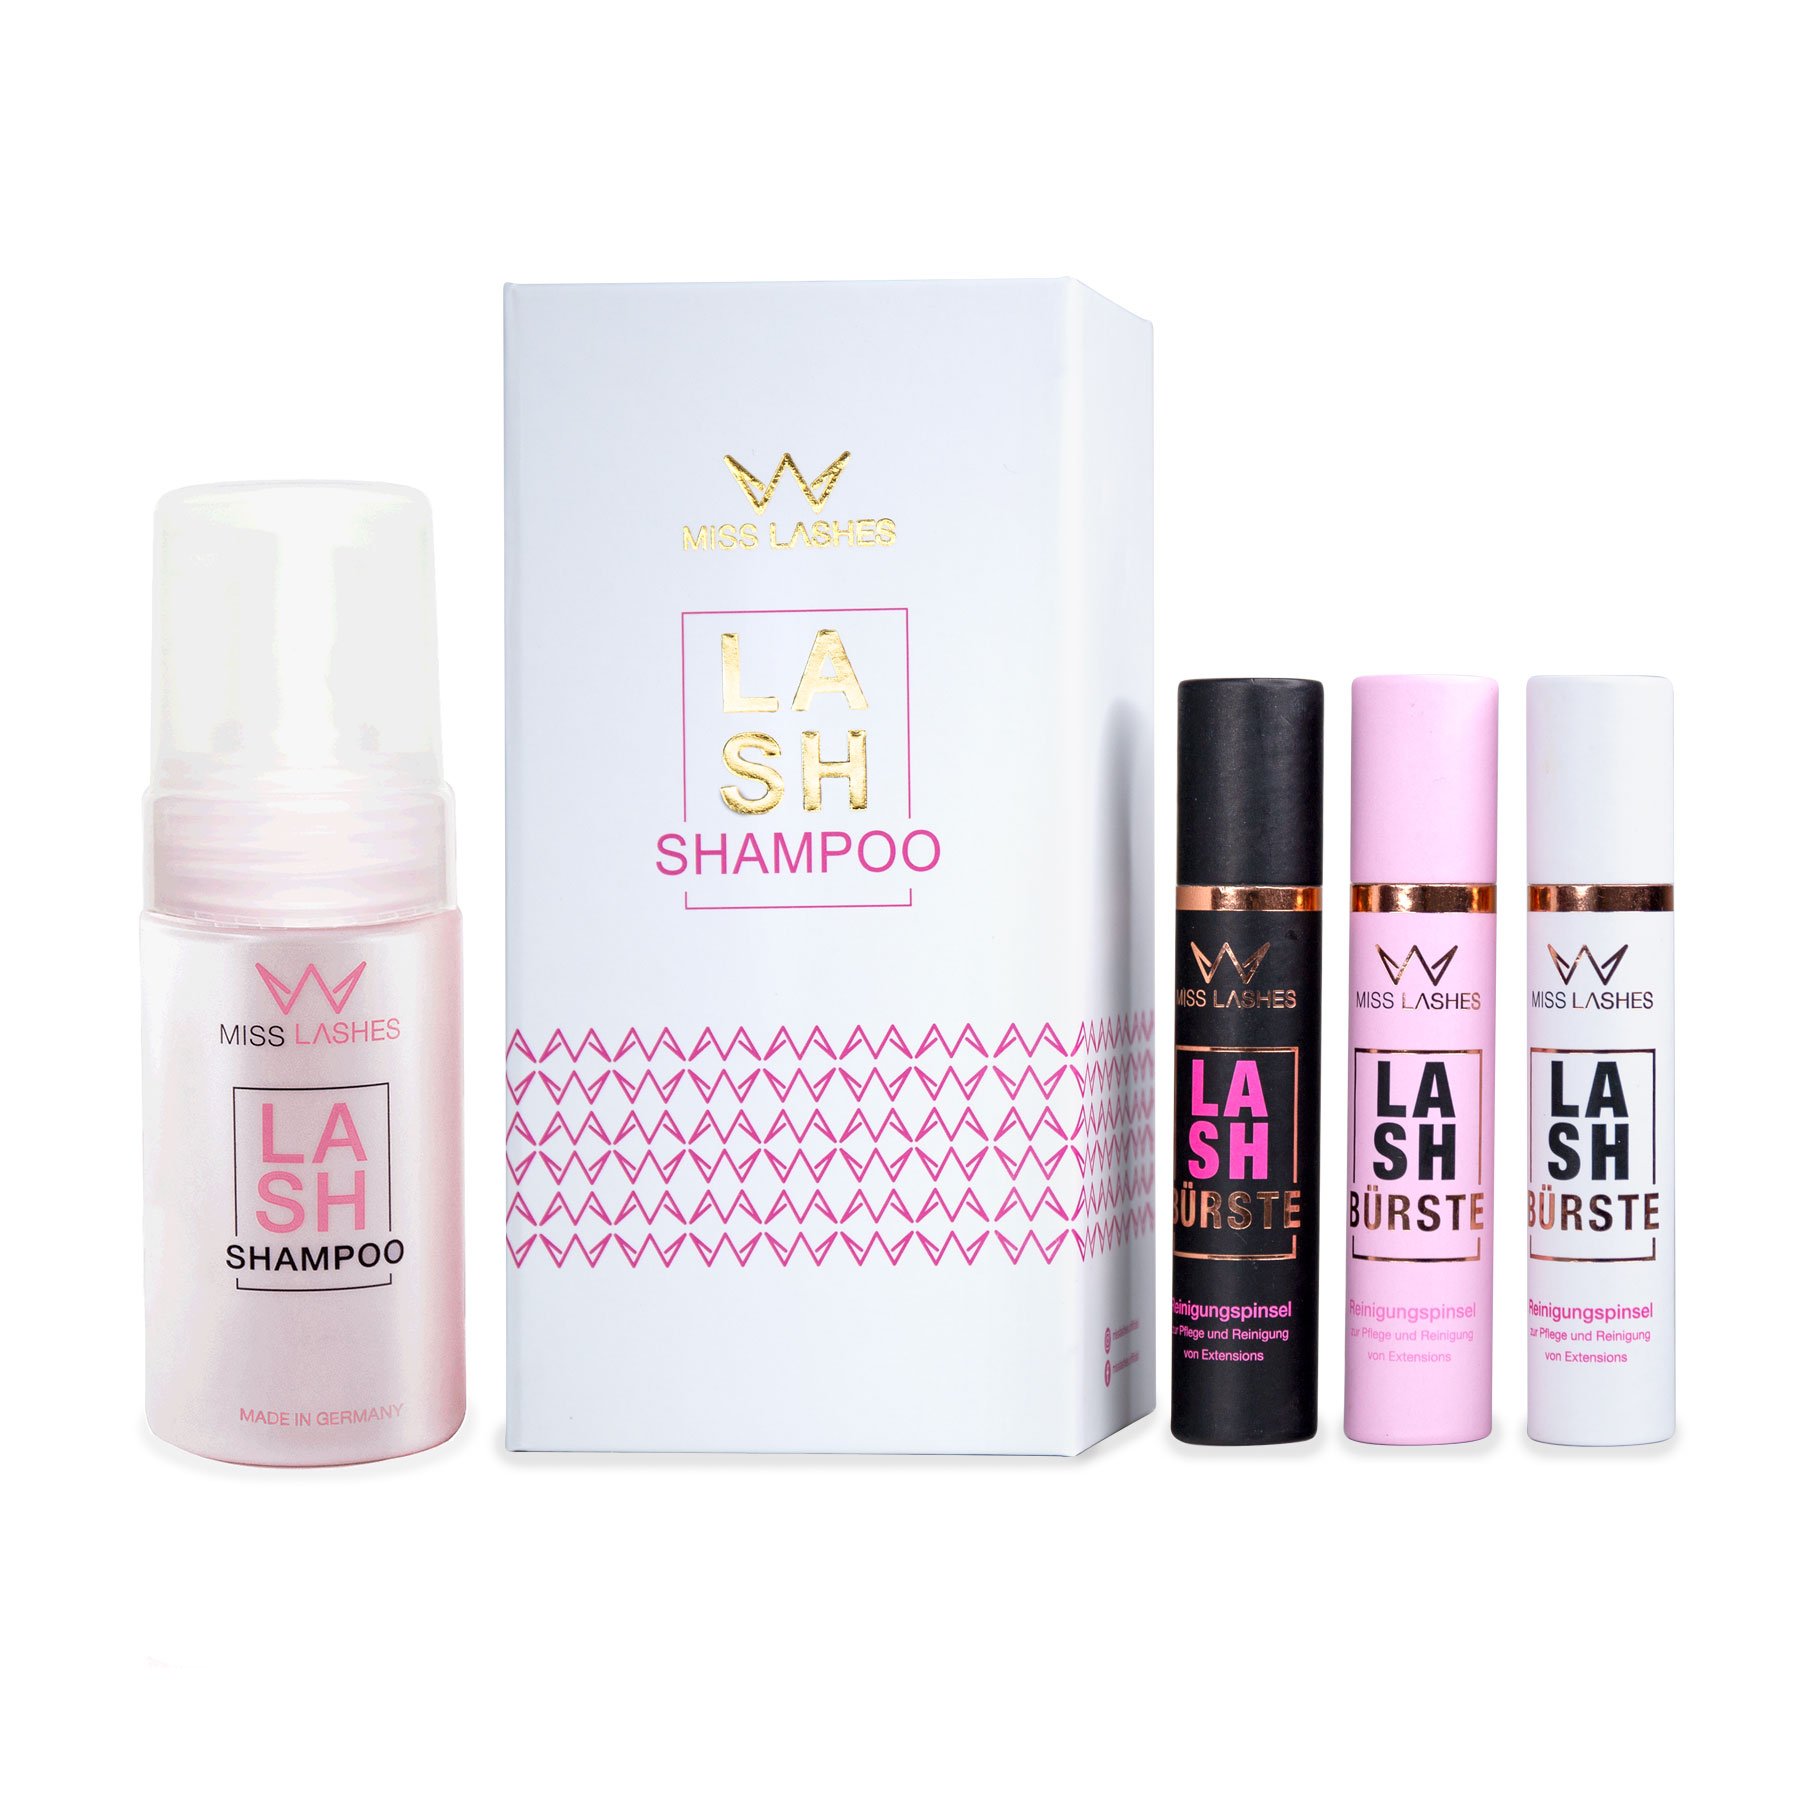 Geschenkbox mit Lash Shampoo und Lash Bürste